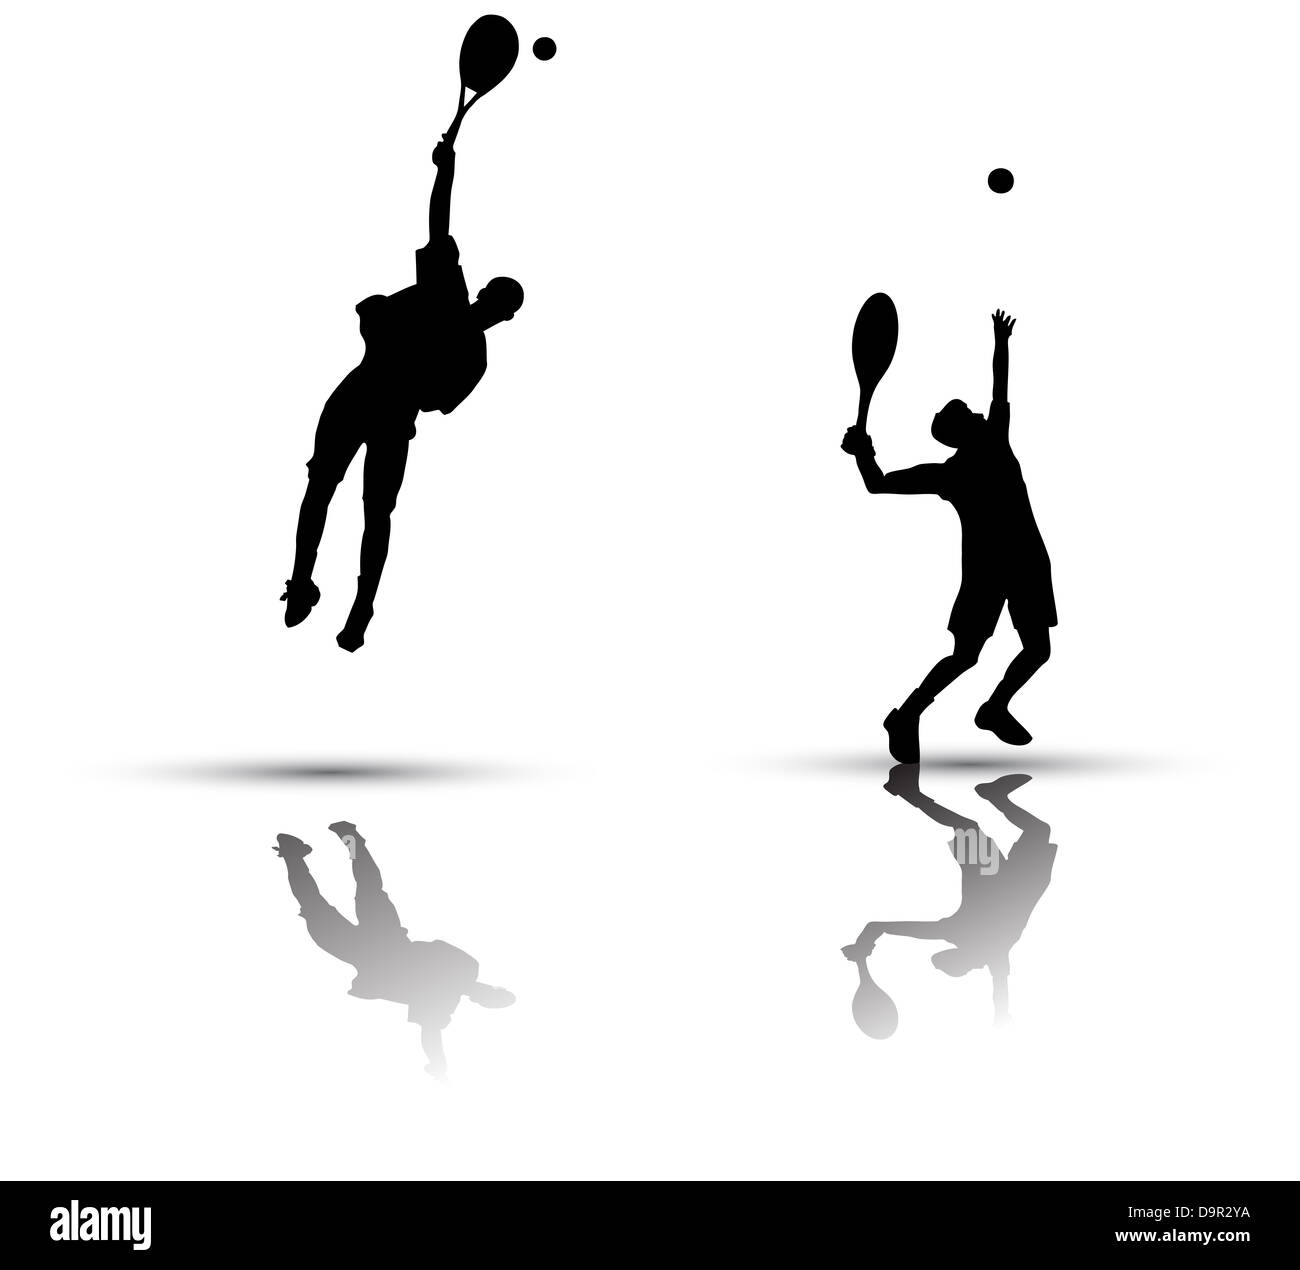 Vektor-Tennis-Spieler-Silhouette auf weißem Hintergrund Stockfoto